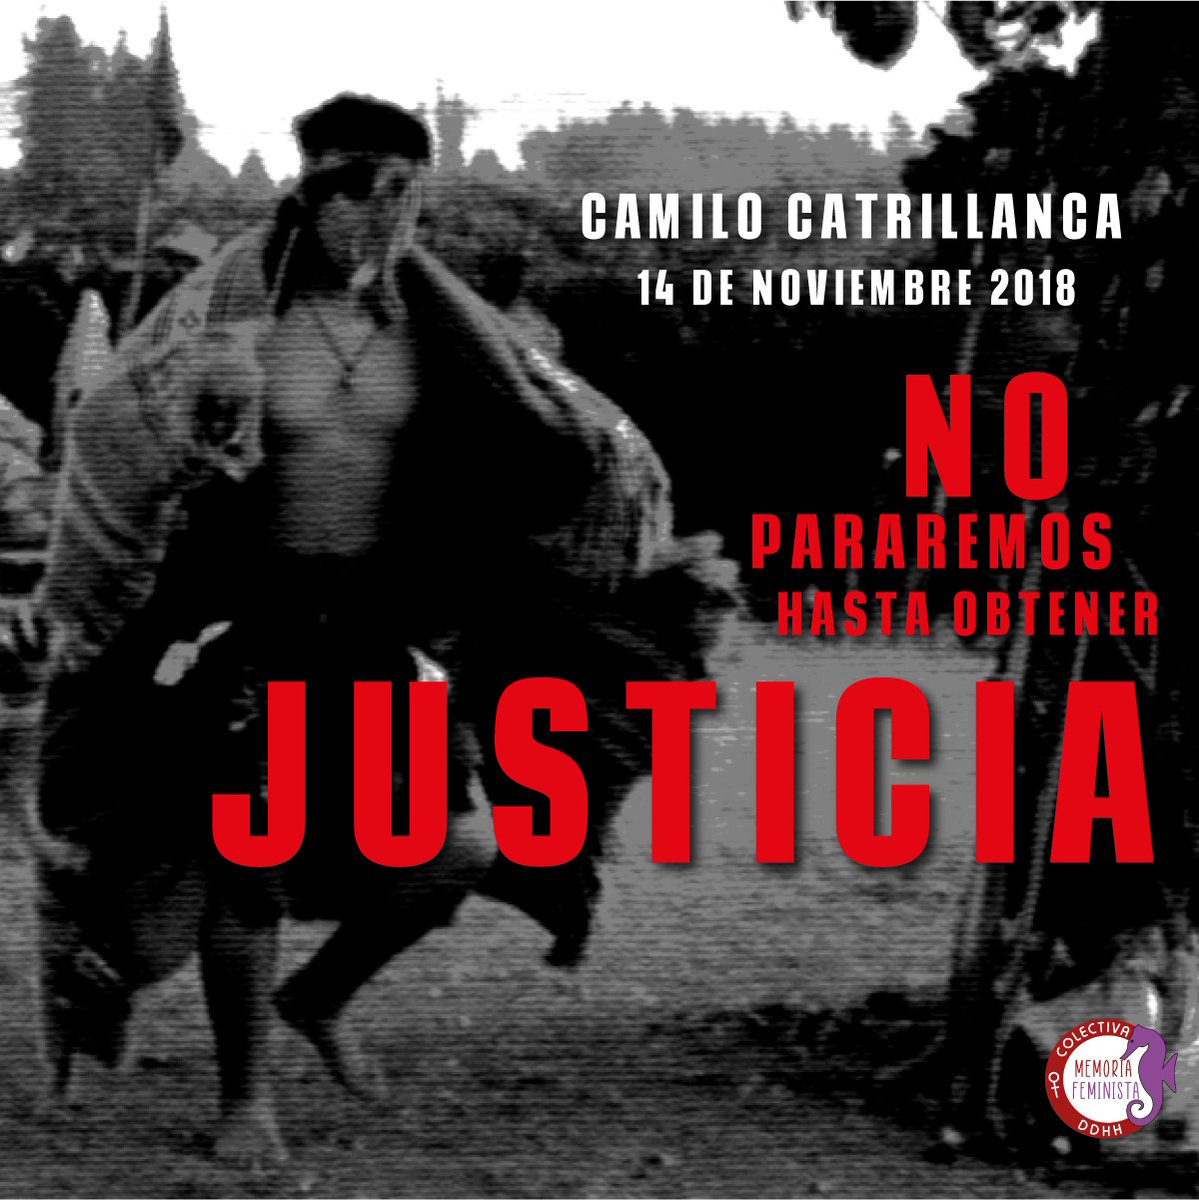 Te recordamos #CamiloCatrillanca y conmemoramos tu legado de lucha, consecuencia y valentía.
Exigimos toda la verdad, toda la justicia y toda la reparación.
Lucharemos para que tu pueblo logre la recuperación de las tierras usurpadas, su autodeterminación y libertad.
Marichiweu.